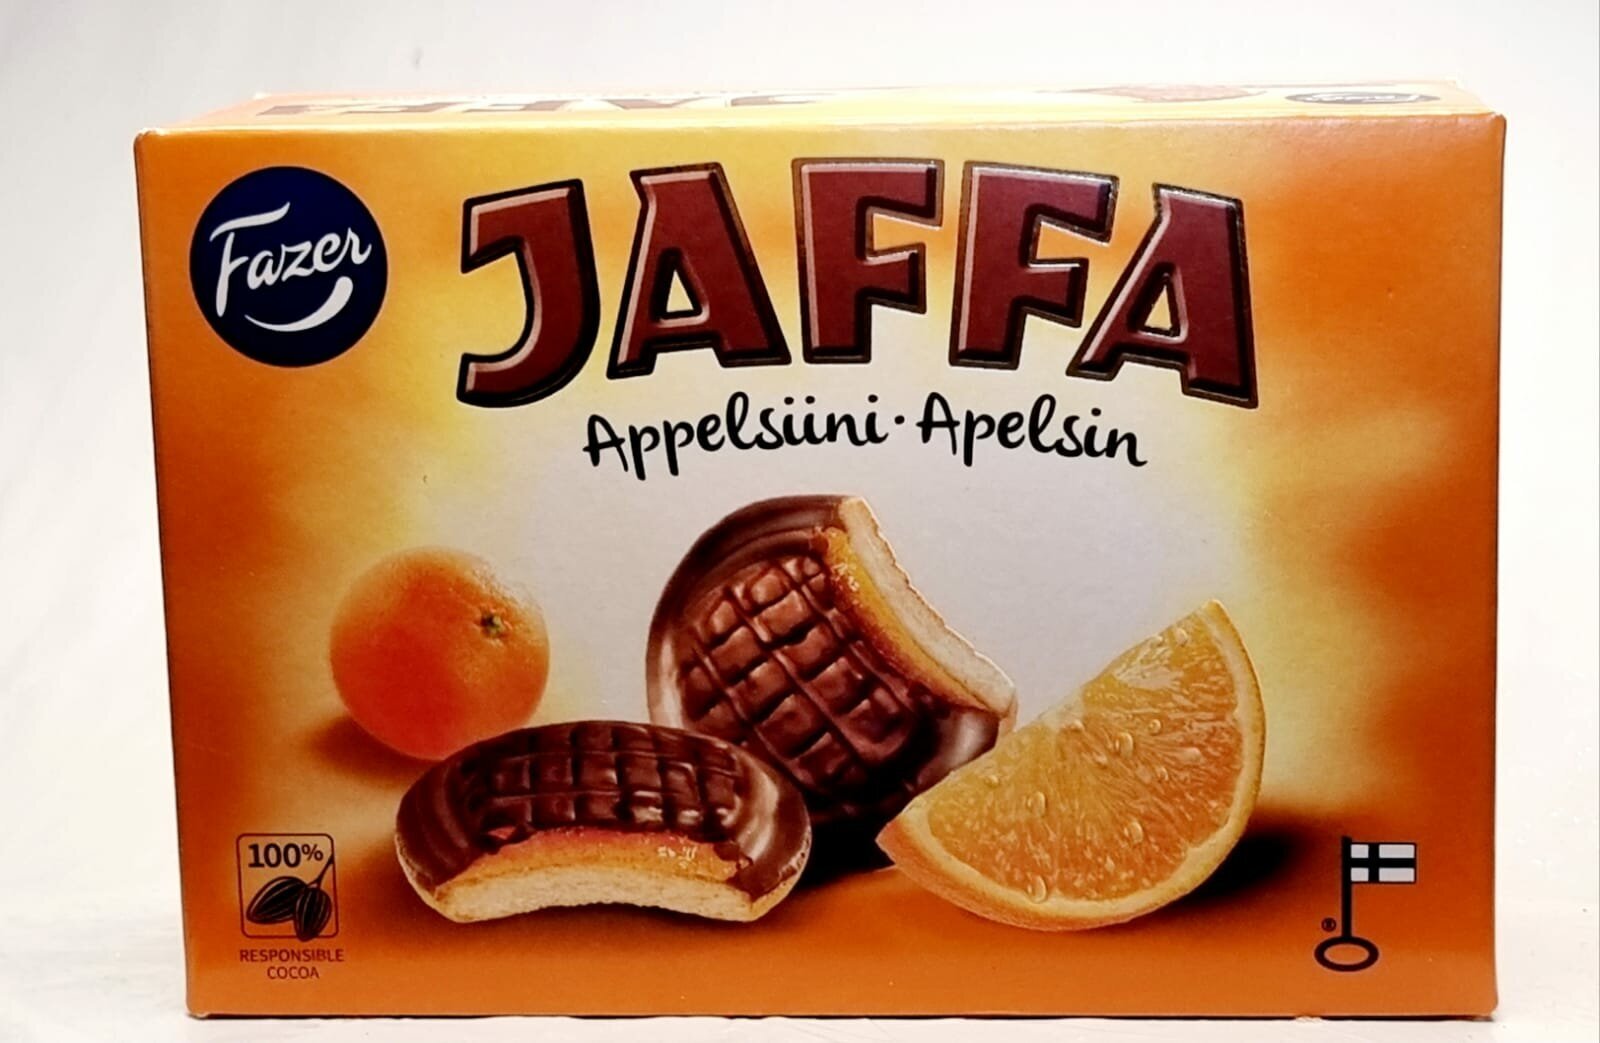 Печенье Fazer Jaffa Appelsiini, 300 г (Из Финляндии)